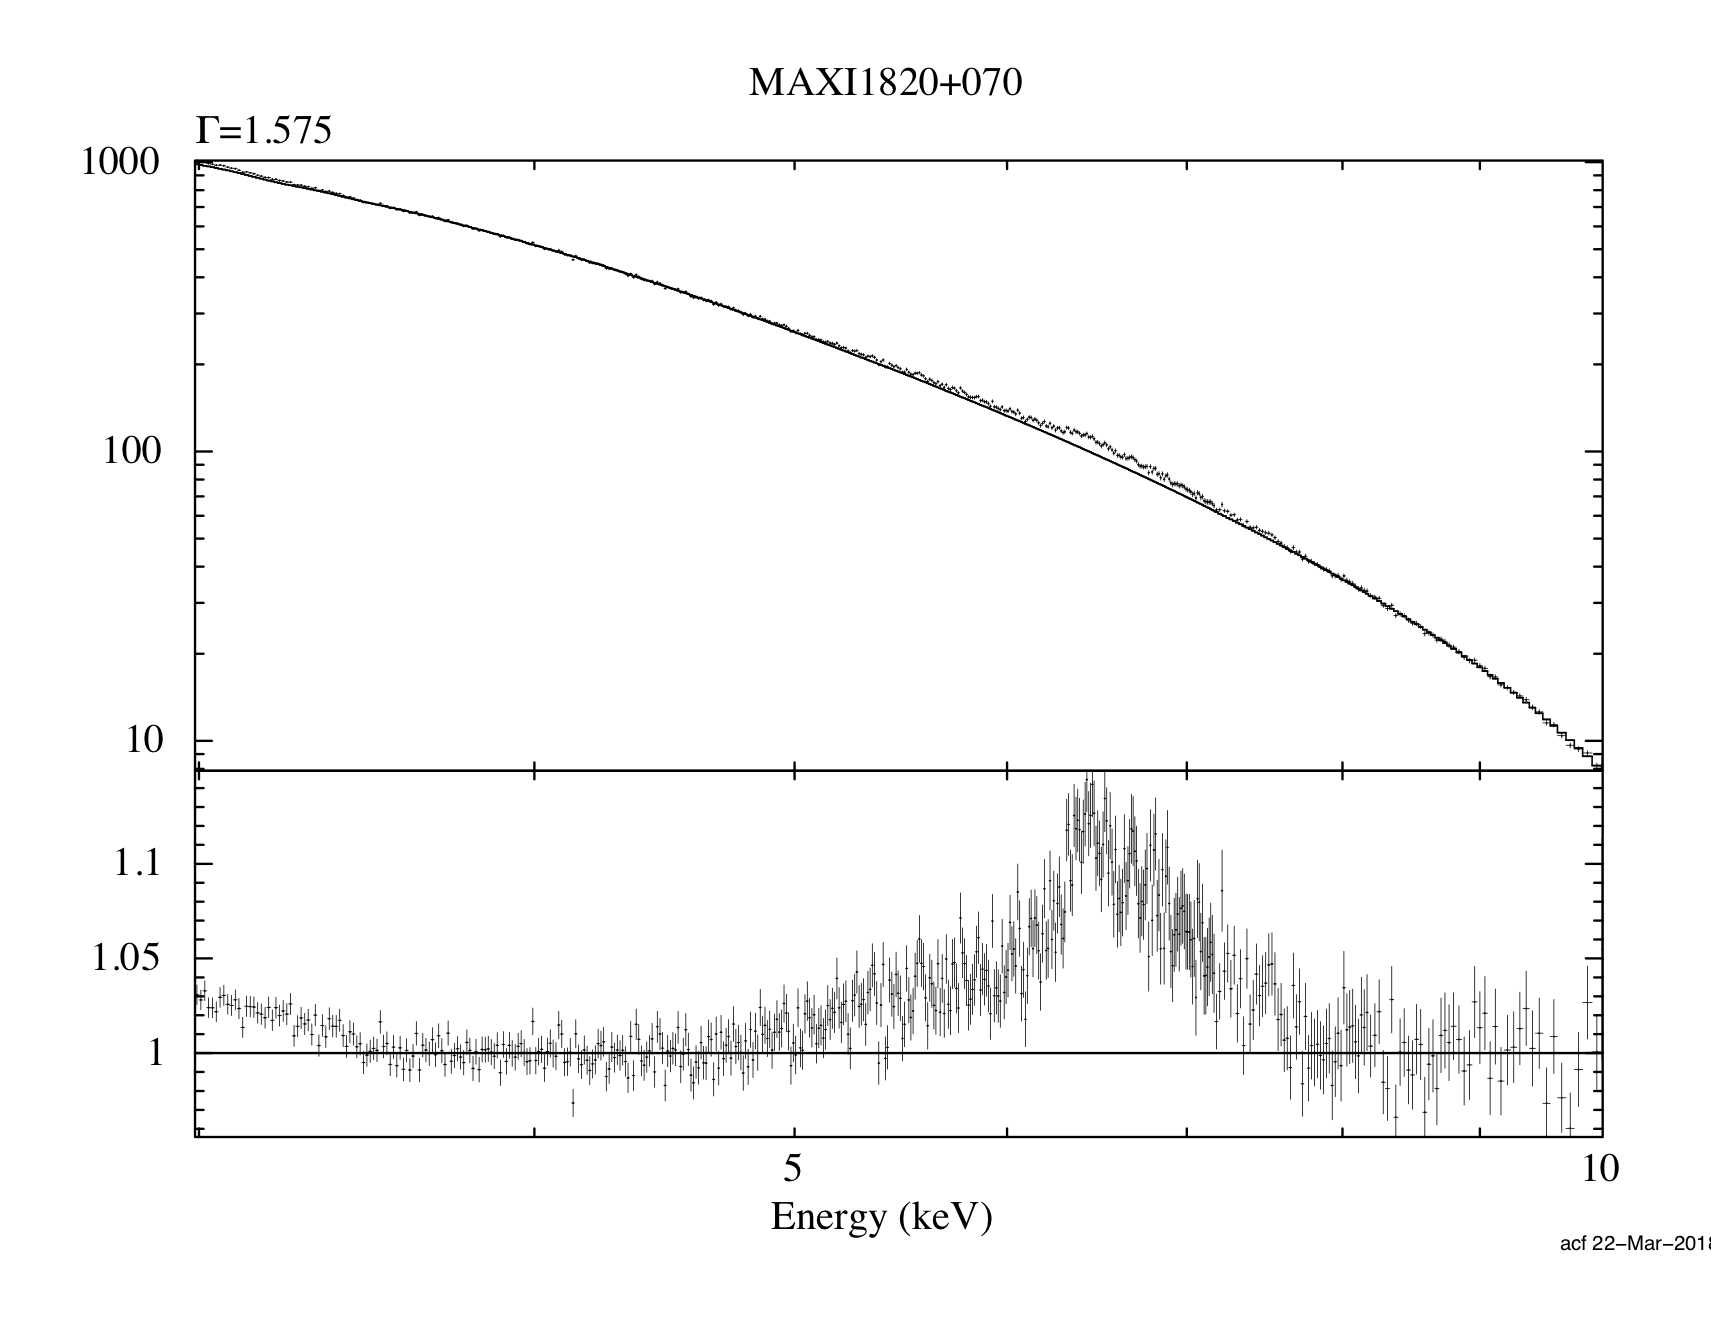 Quasi-periodic oscillation detected in new transient MAXI 1820+070